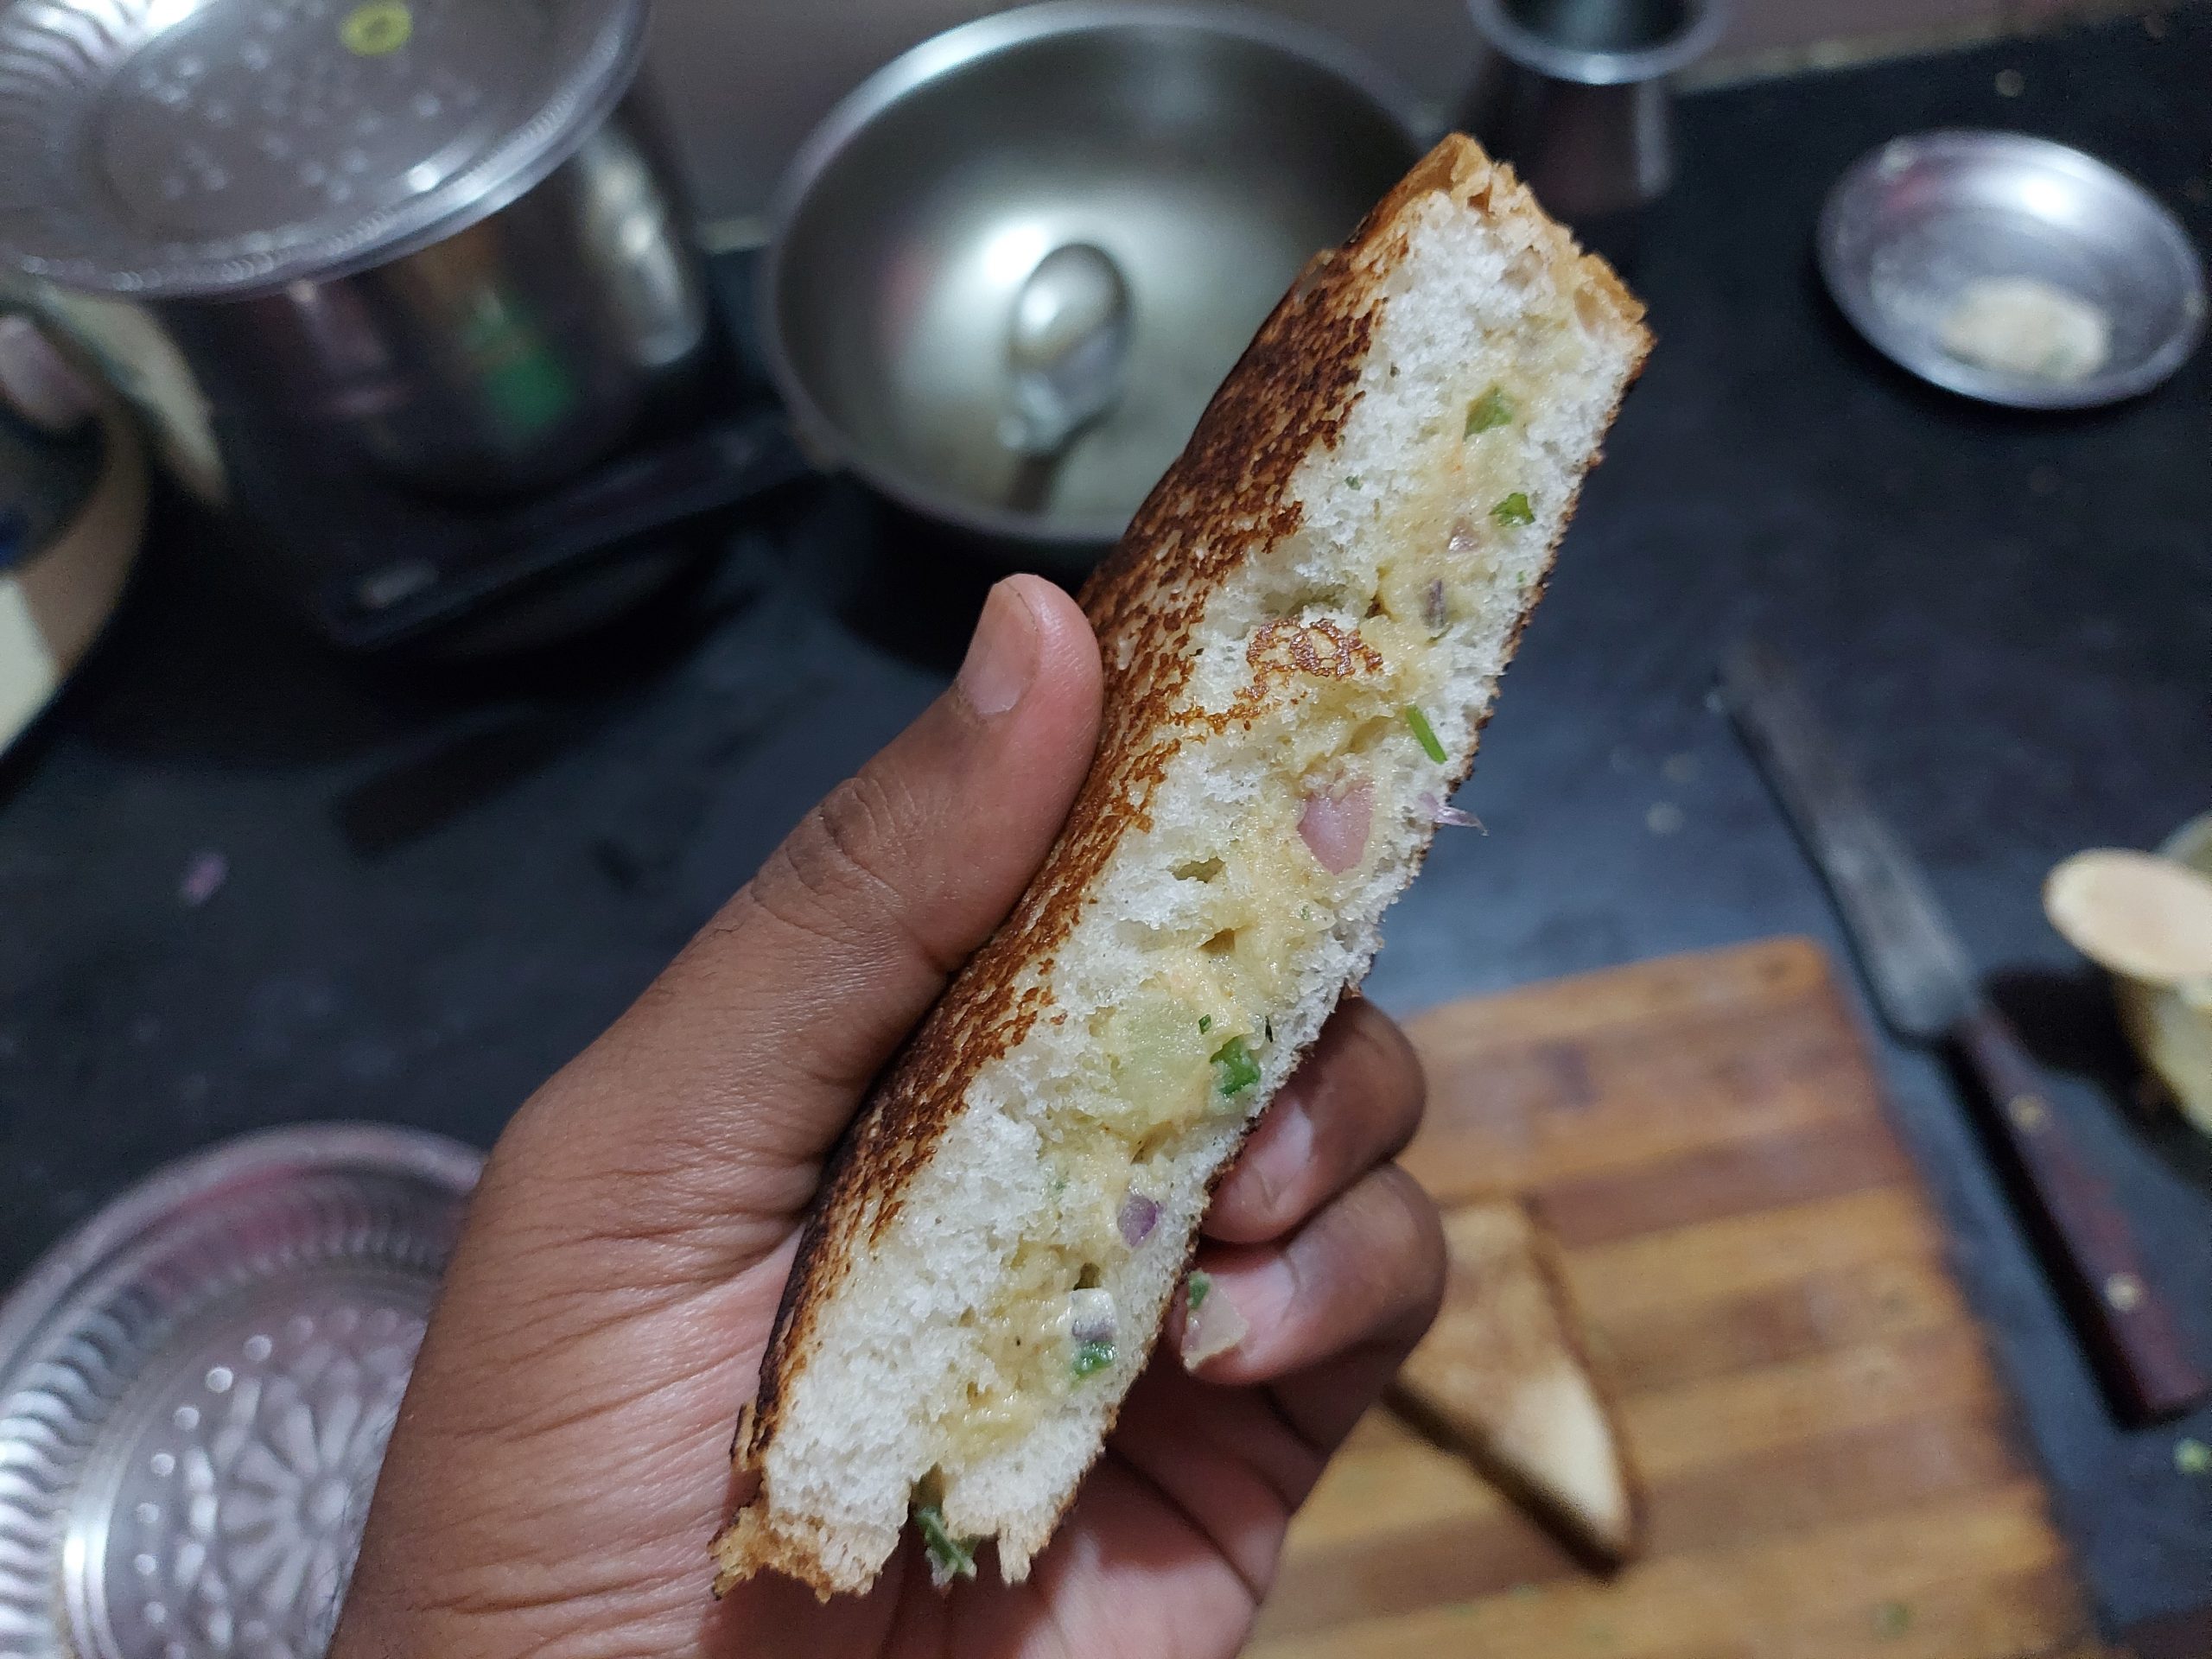 Sandwich in hand